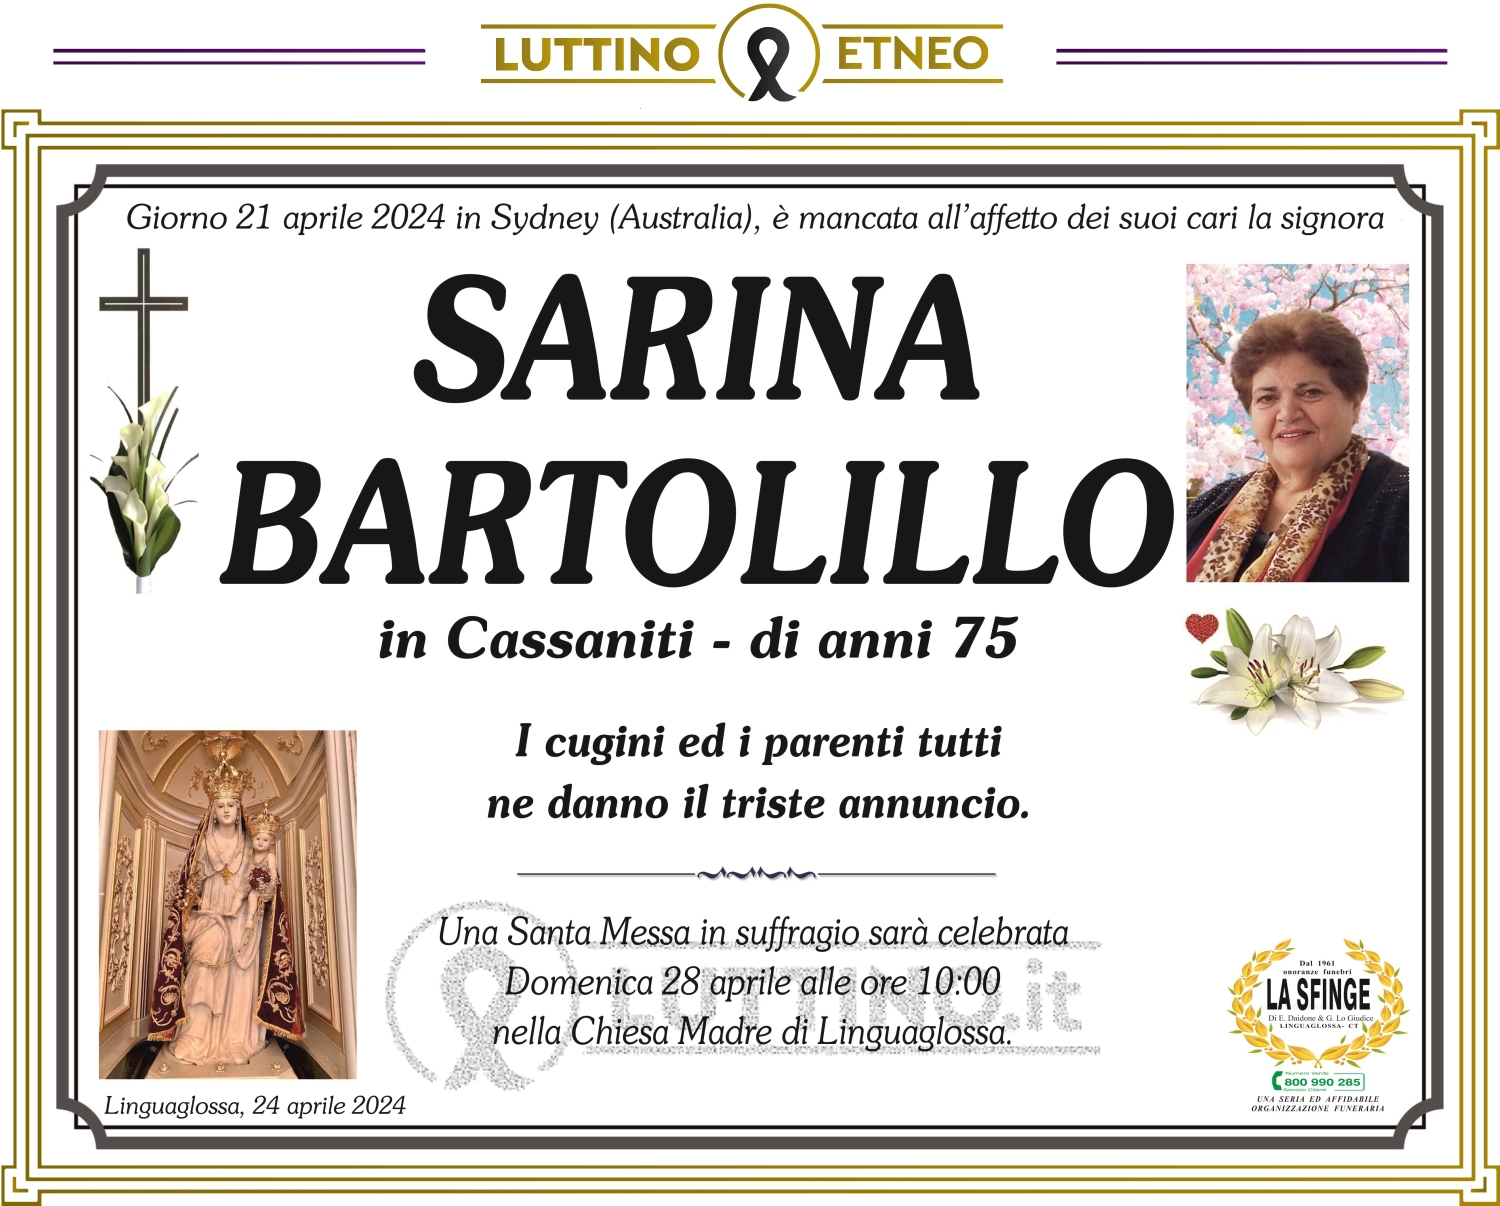 Sarina Bartolillo